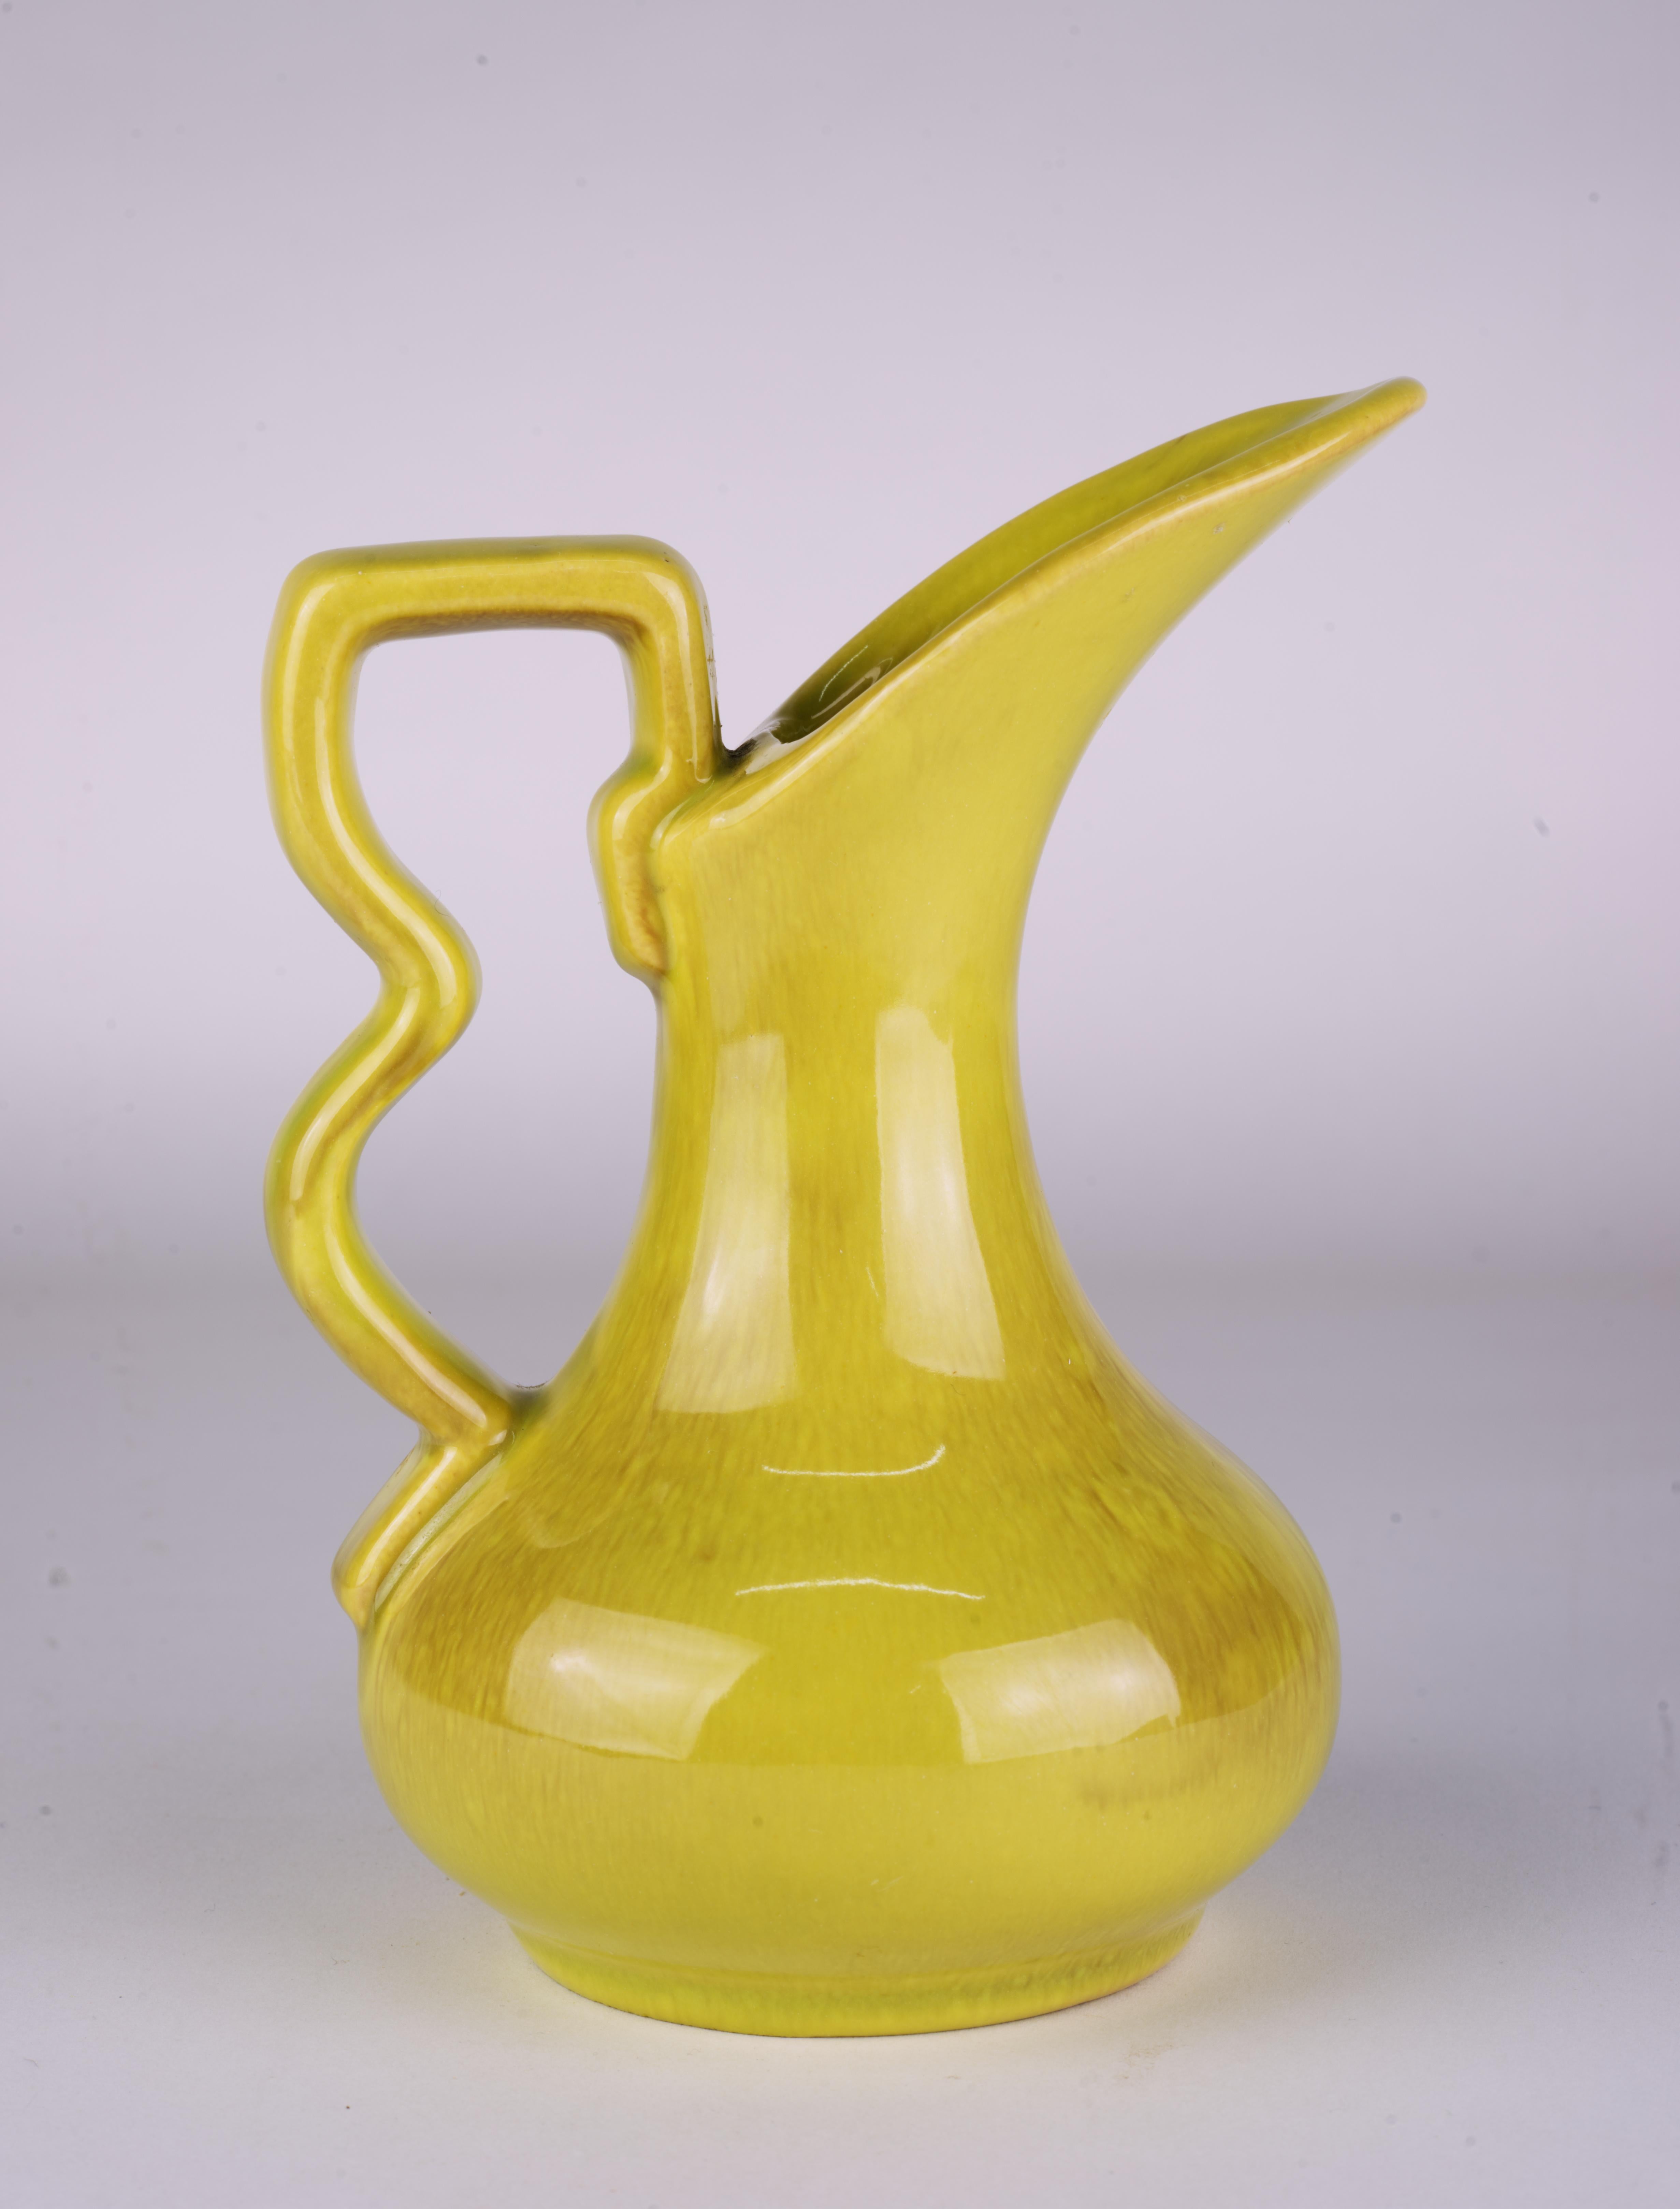  Die Knospenvase in Form einer Ewer-Keramik wurde von Gonder Pottery in Zanesville, Ohio, hergestellt. Die Vase hat eine sehr skulpturale, charakteristische Form aus der Mitte des Jahrhunderts mit einem grafischen Henkel, der durch eine komplexe